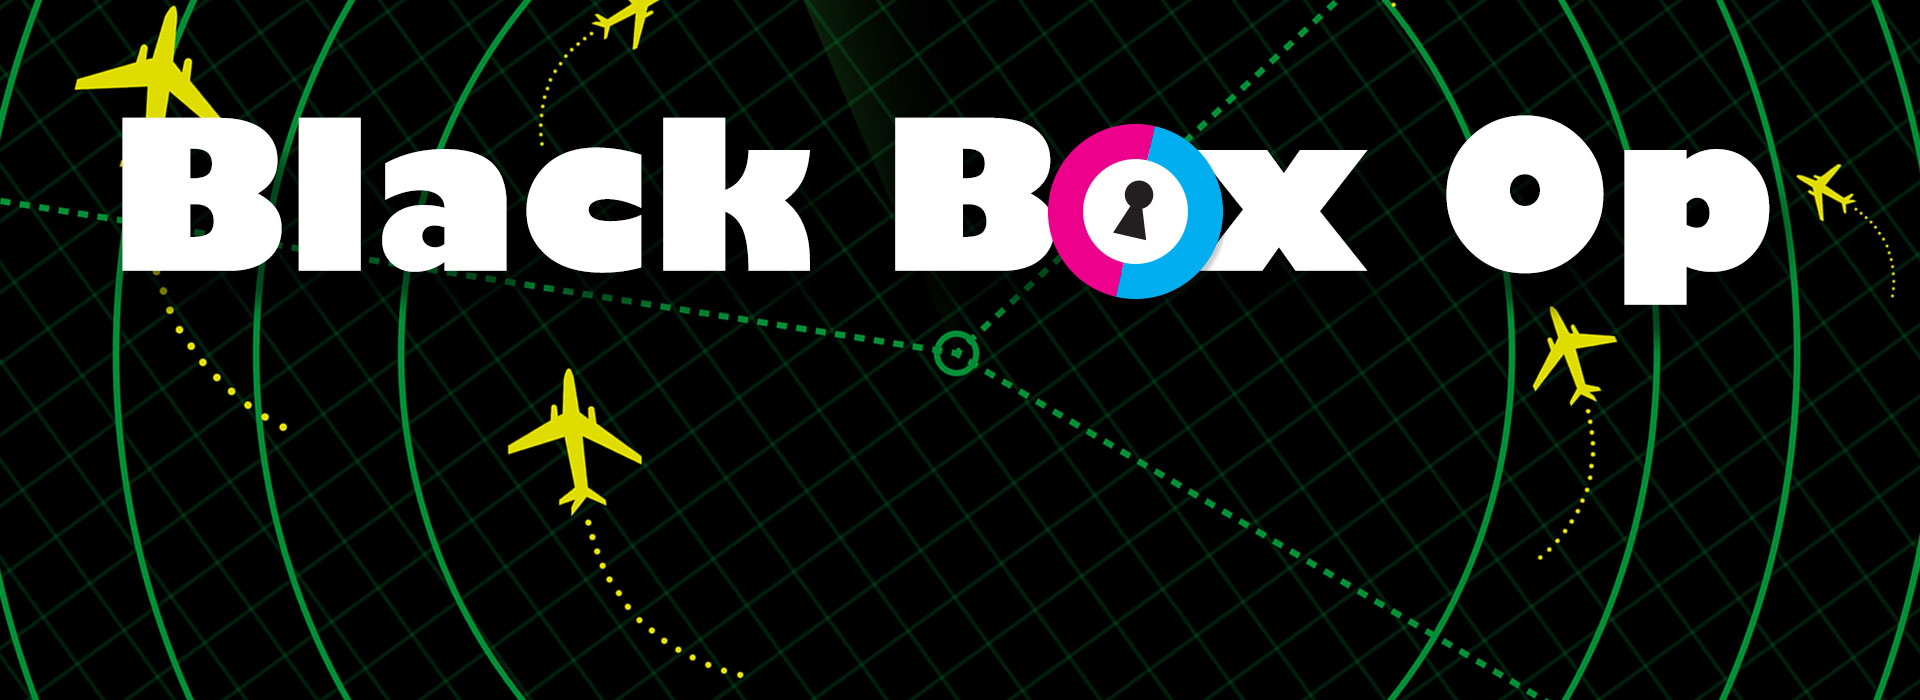 Black Box Op Mini Mission Escape Game